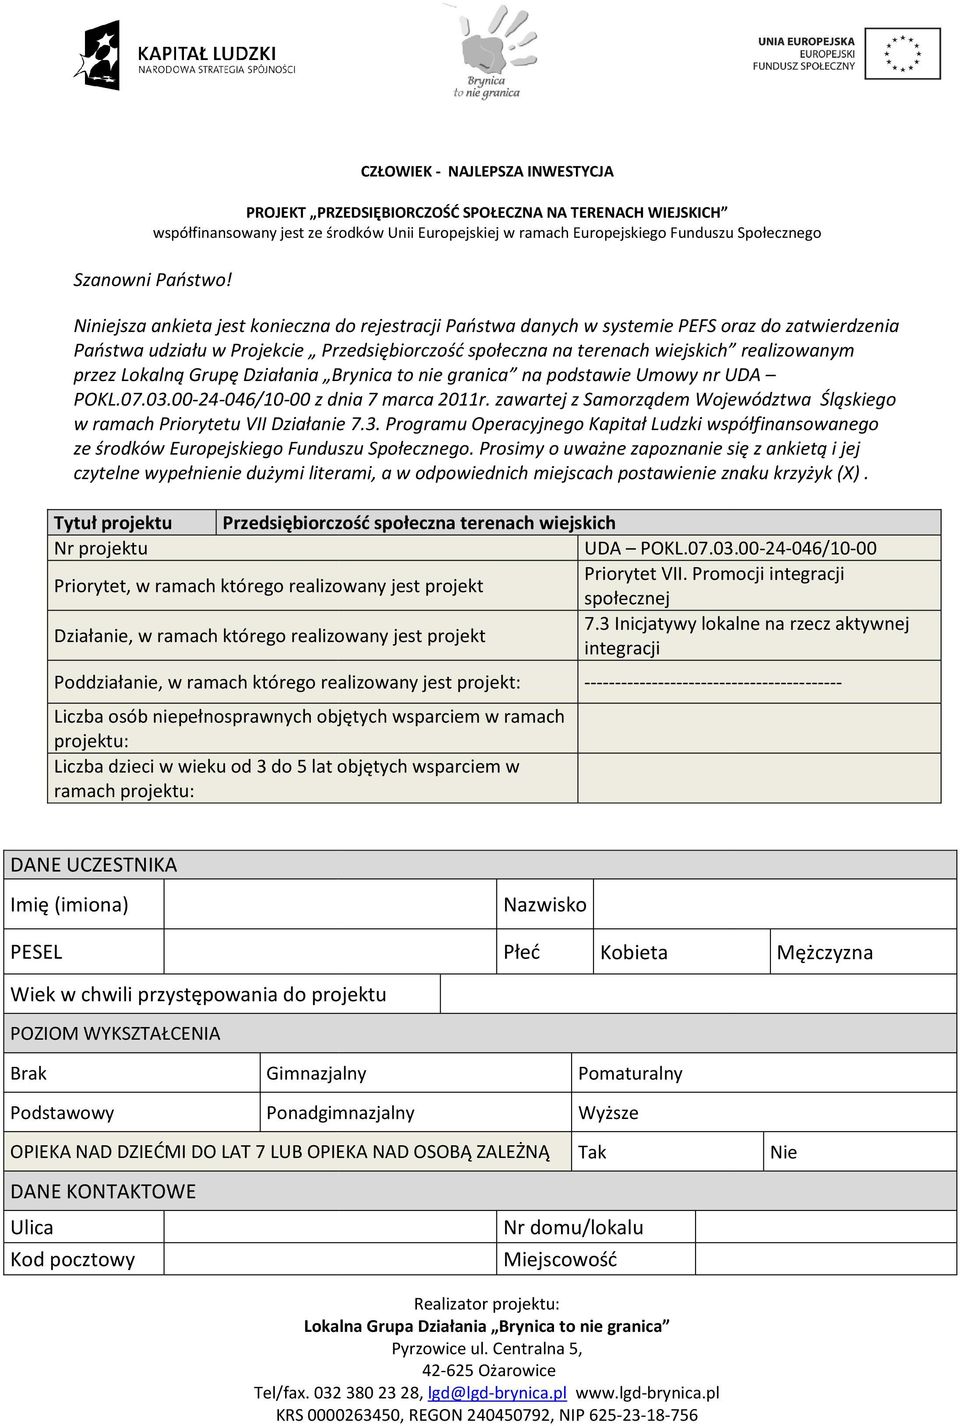 Lokalną Grupę Działania Brynica to nie granica na podstawie Umowy nr UDA POKL.07.03.00-24-046/10-00 00 z dnia 7 marca 2011r.